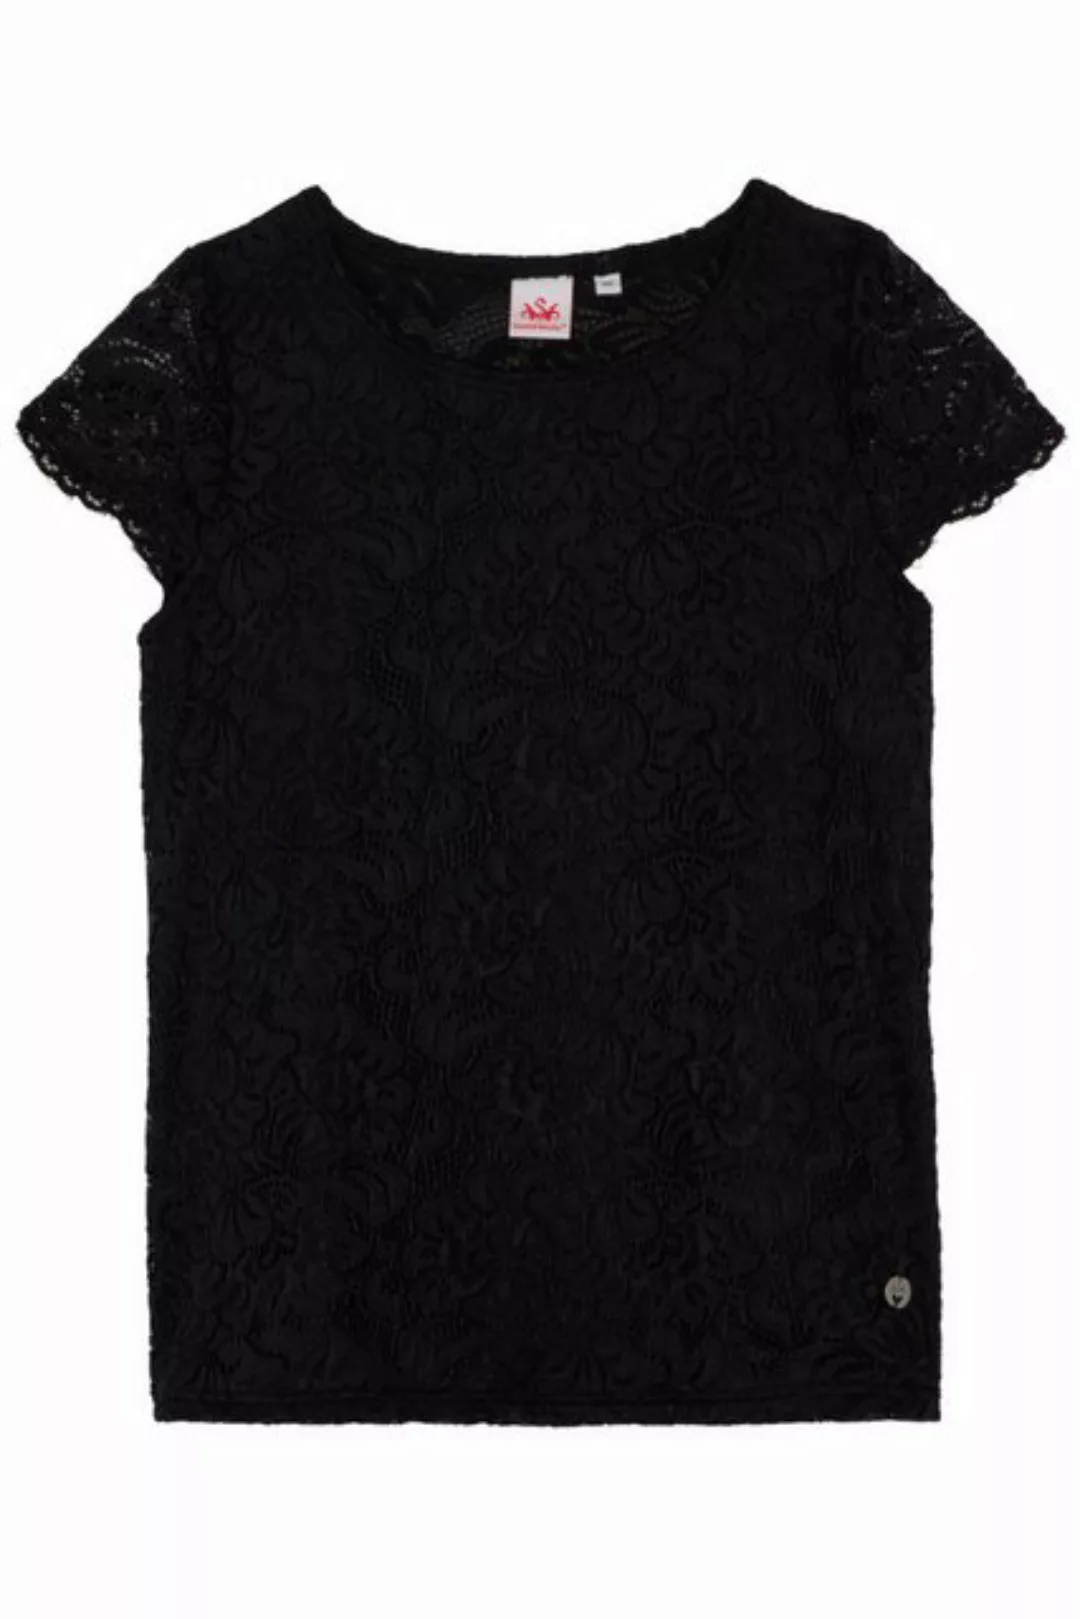 Spieth & Wensky Trachtenbluse Blusenshirt - DIVERIA - offweiß, schwarz günstig online kaufen